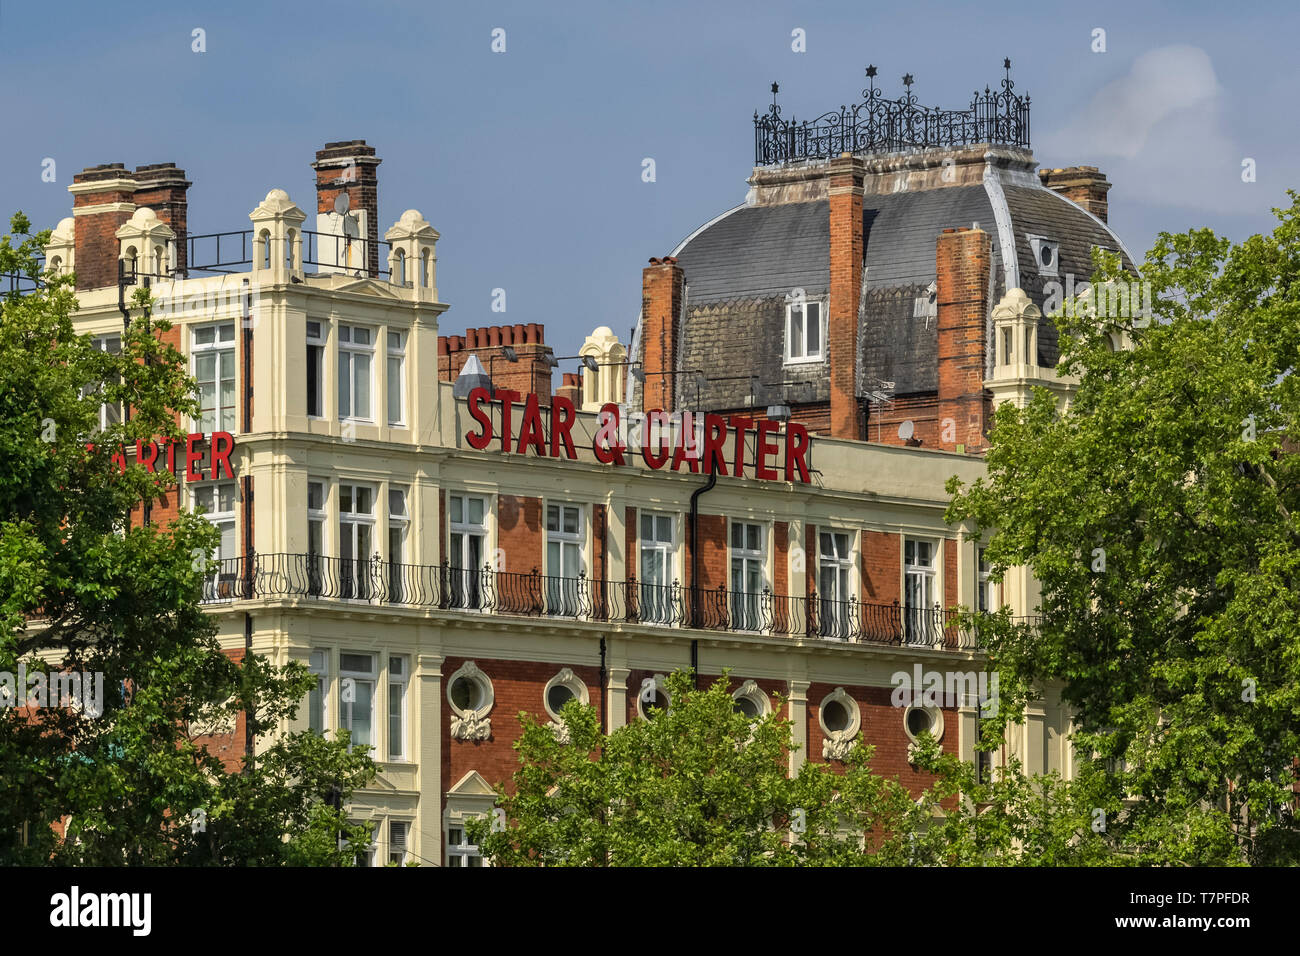 PUTNEY, LONDRES, Royaume-Uni - 04 JUILLET 2018 : la façade du Star and Garter Pub, un bâtiment édouardien Banque D'Images